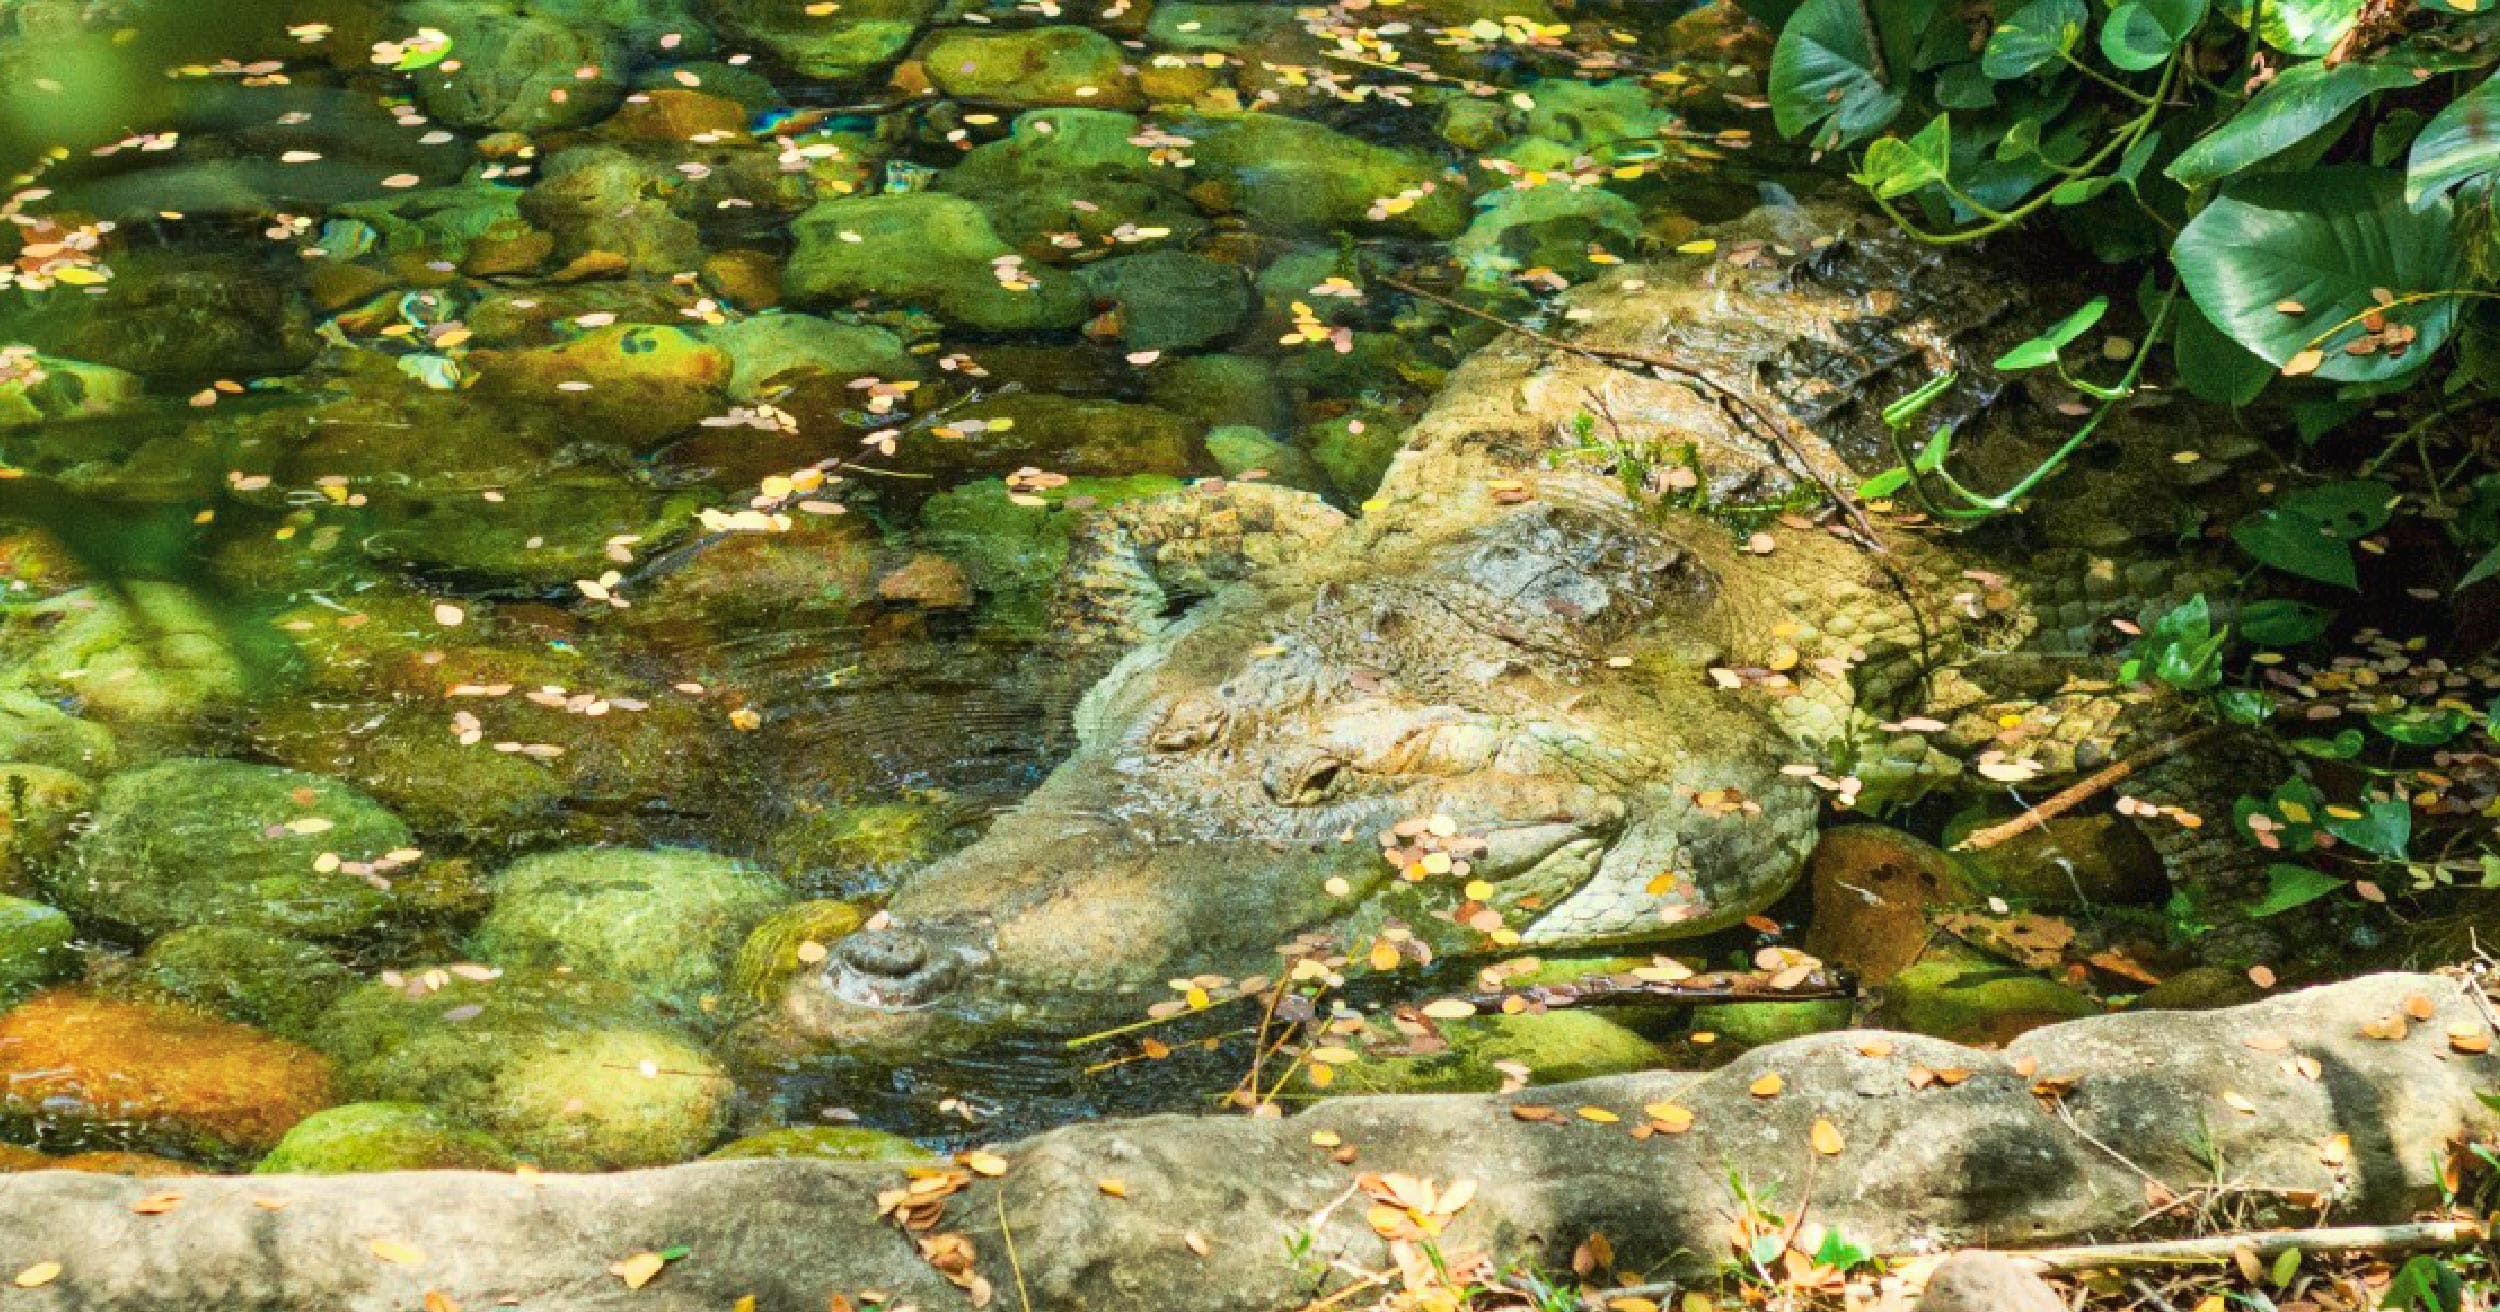 Ejemplar de caimán llanero que habita en la zona de conservación de Piscilago.